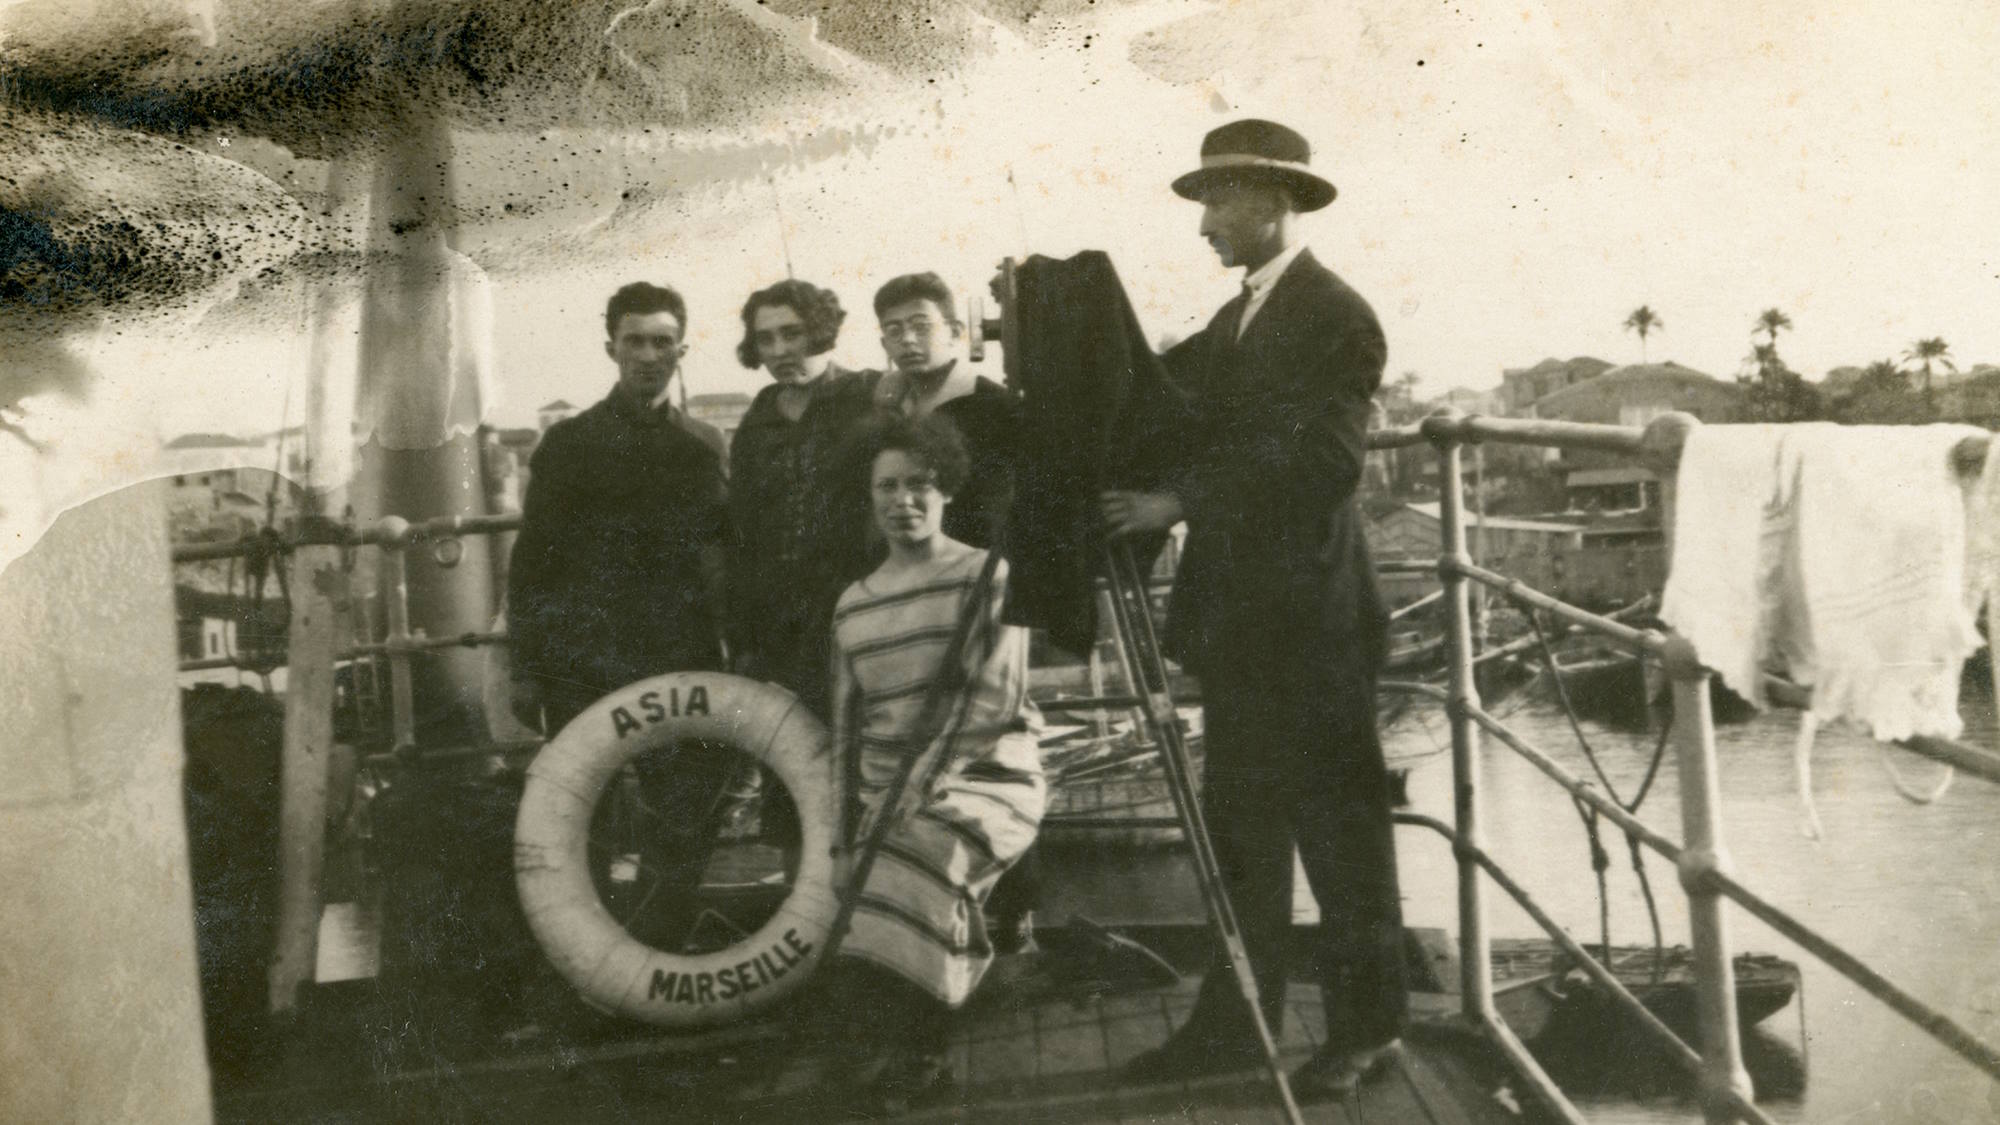 ישראל אולשטיין עומד ליד מצלמתו על הספינה "אסיה", בדרכו לארץ ישראל, 2.4.1926